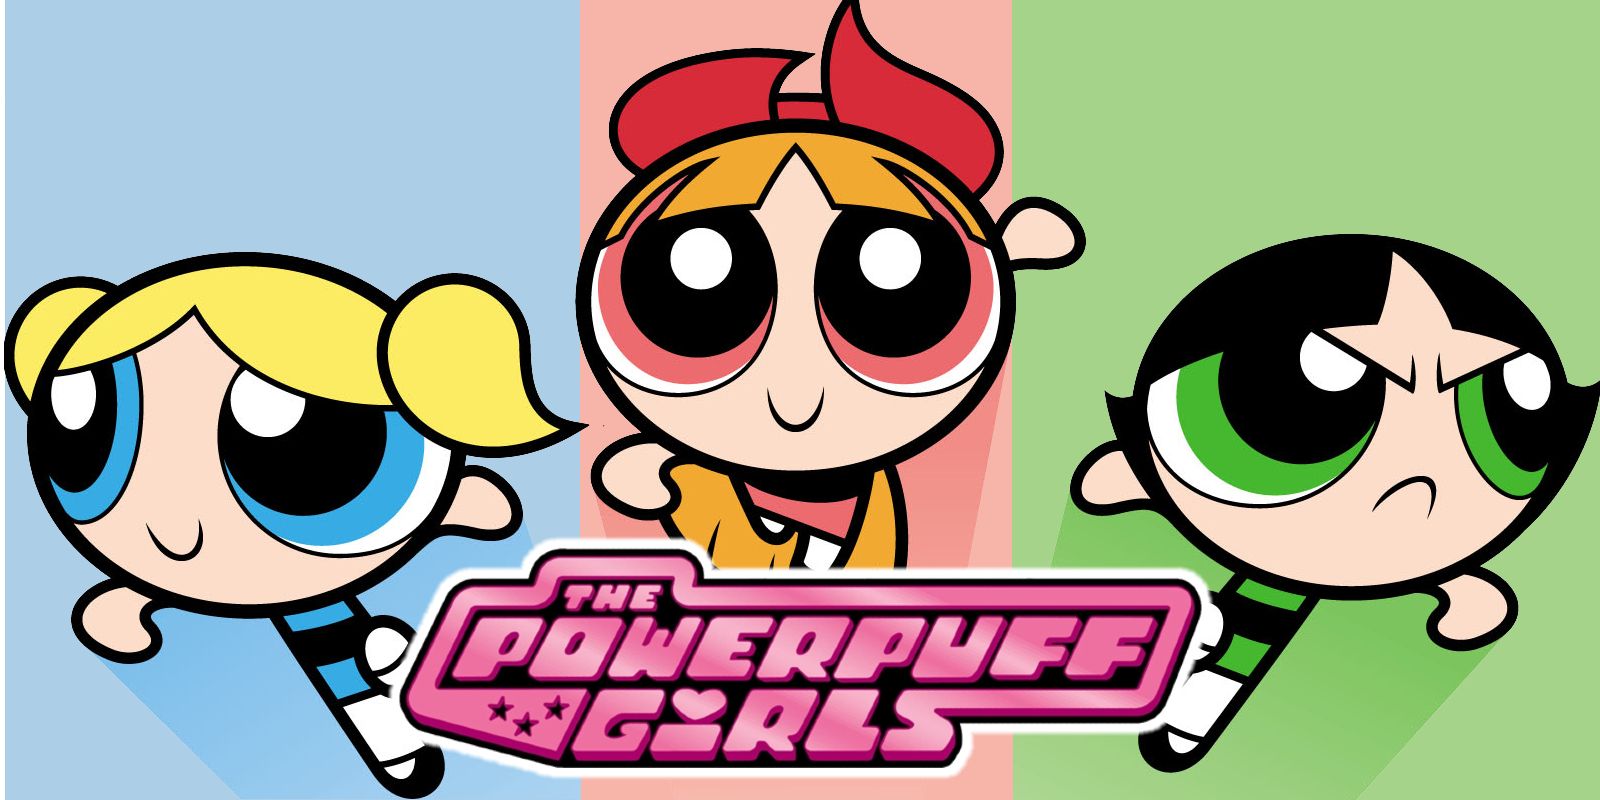 The Powerpuff Girls 